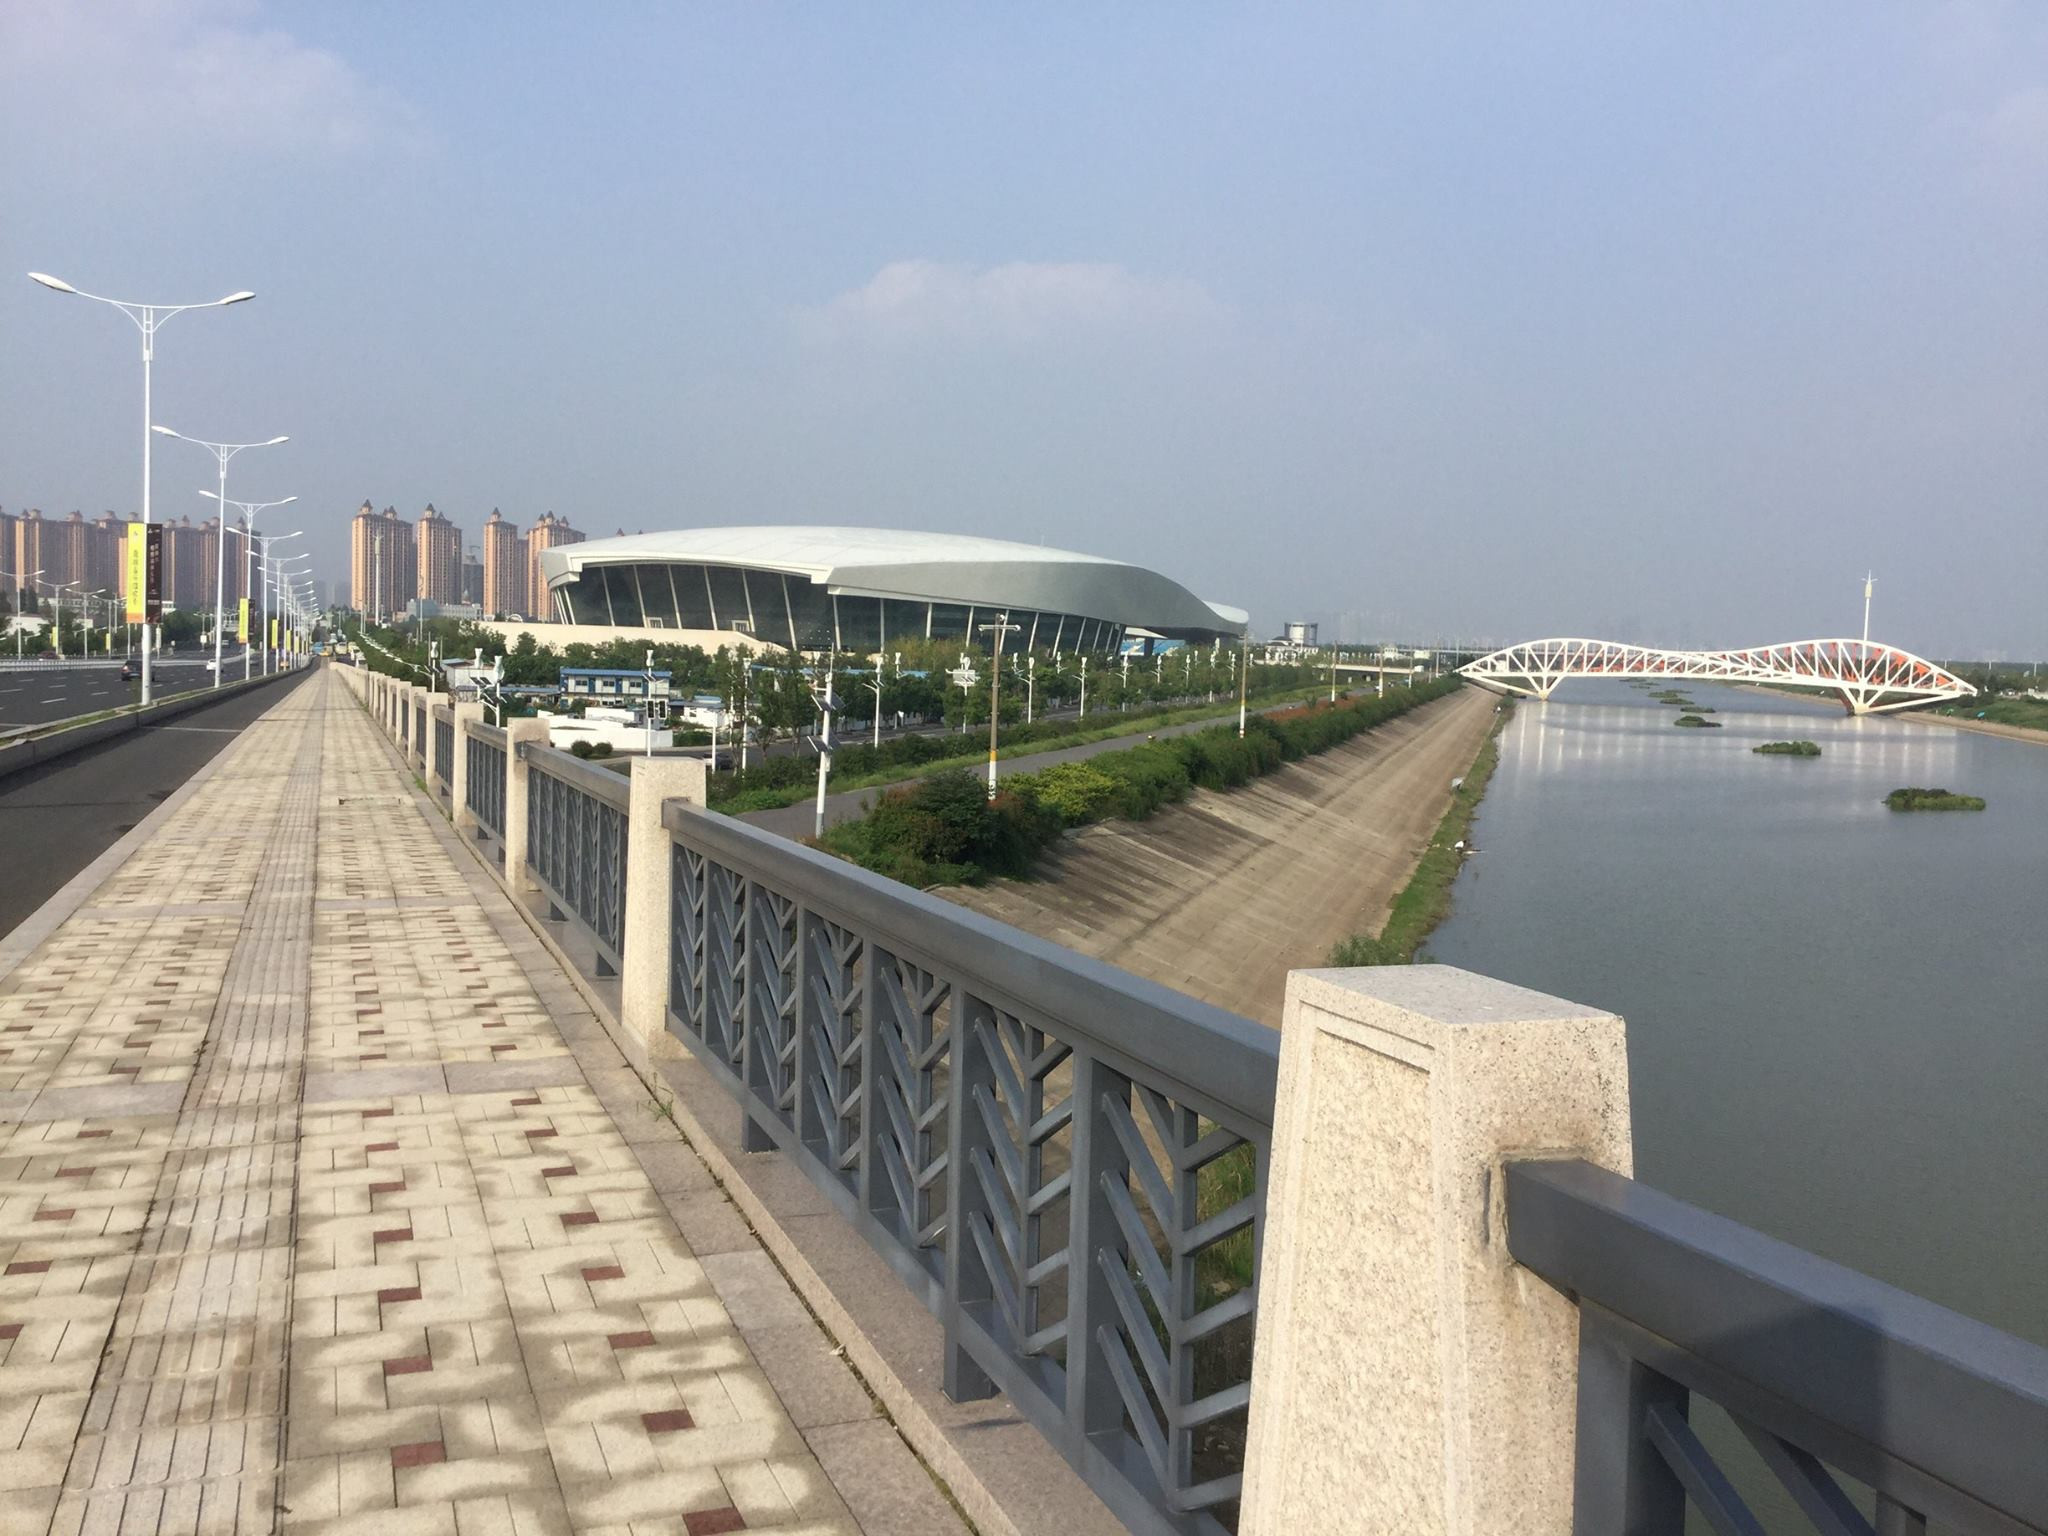 Nanjing will host the first World Skate Skateboarding Park World Championships ©Facebook